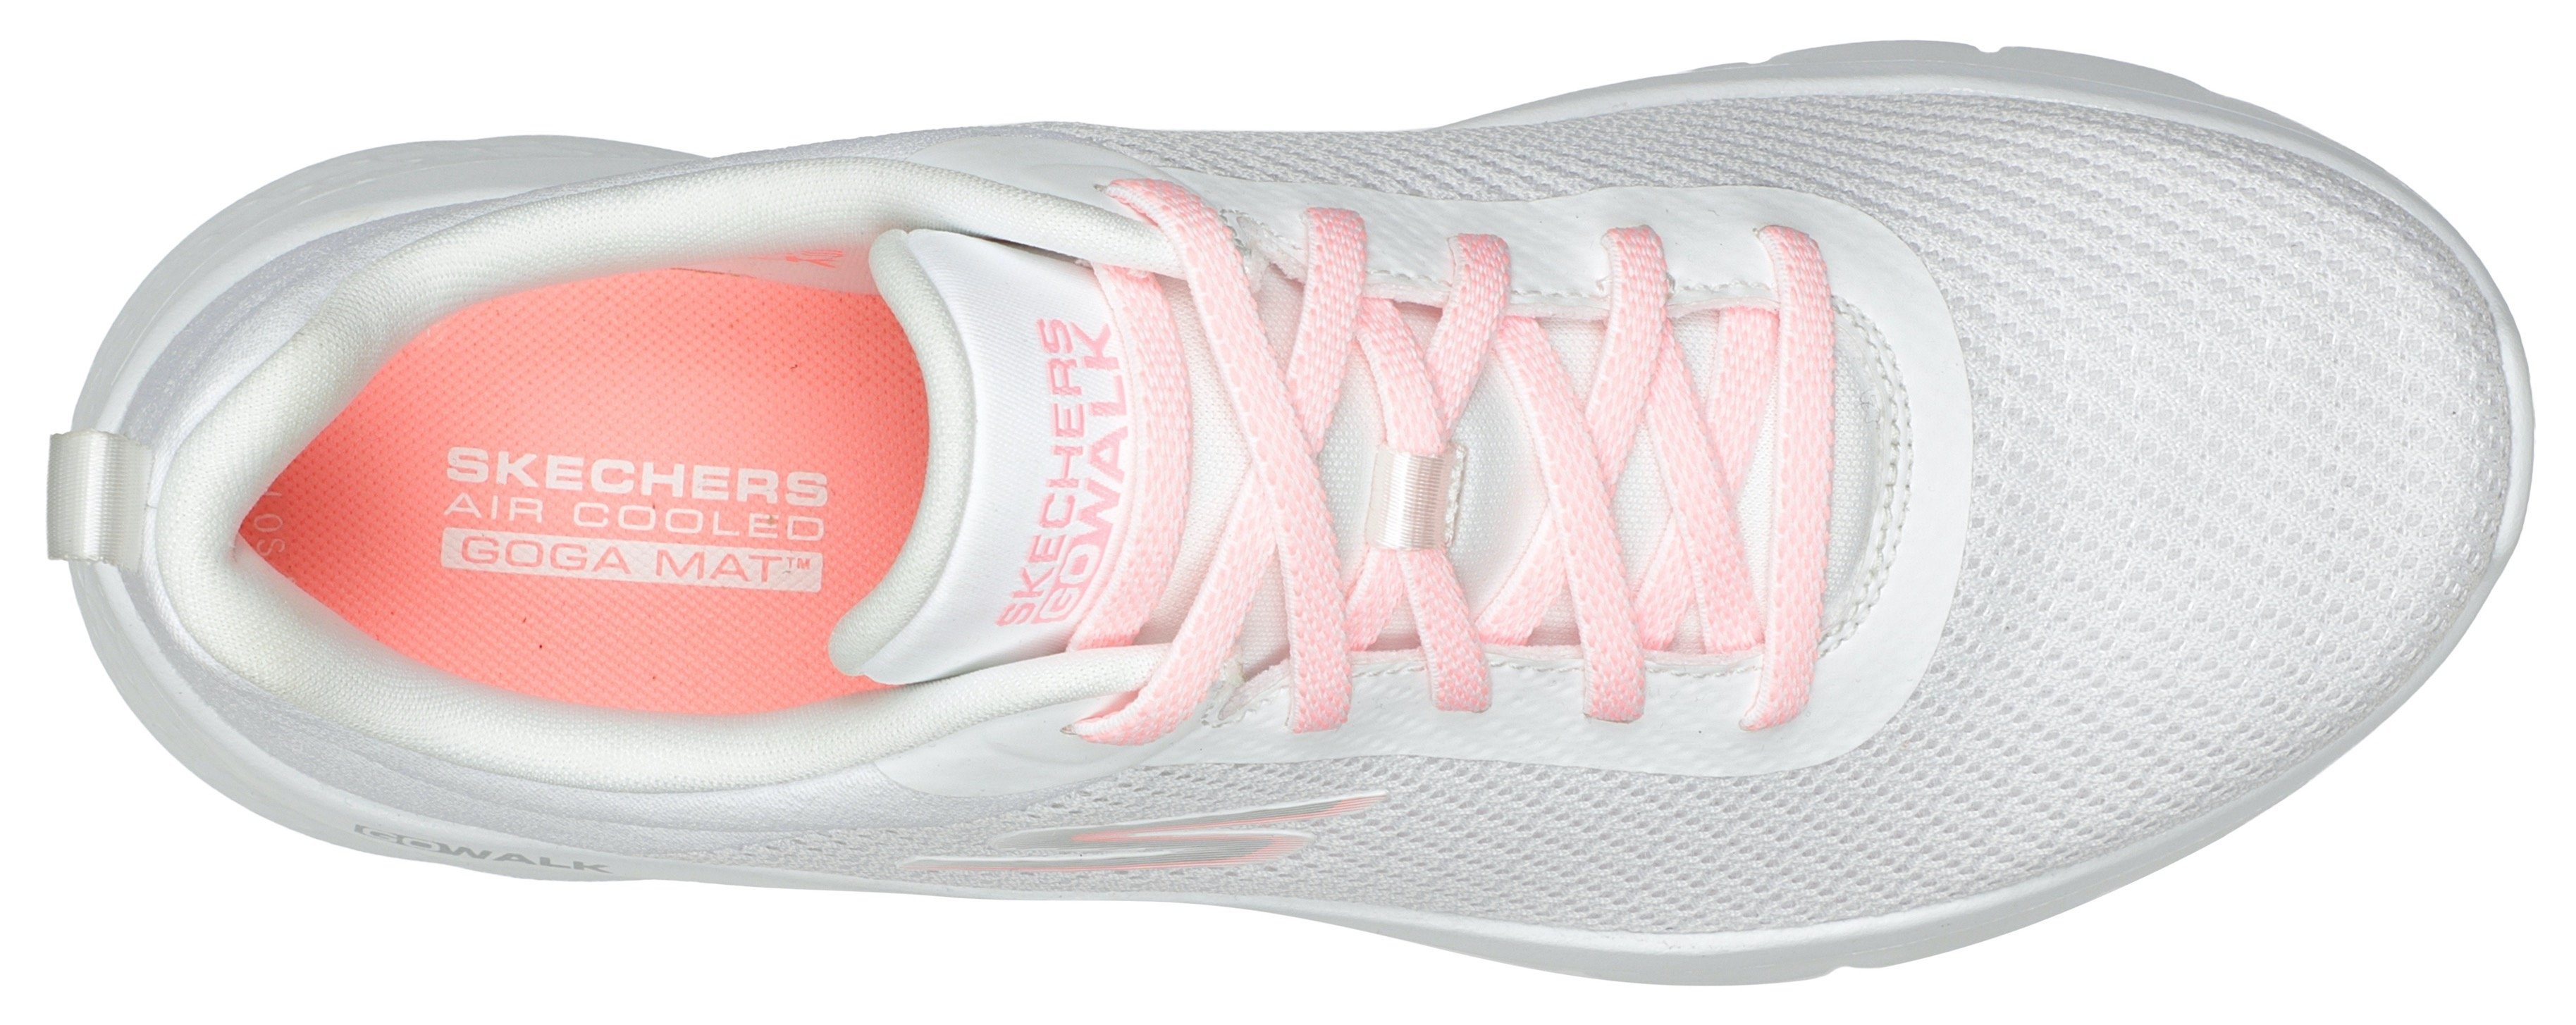 Skechers GO WALK FLEX ALANI für Slip-On weiß-rosa geeignet Sneaker Maschinenwäsche